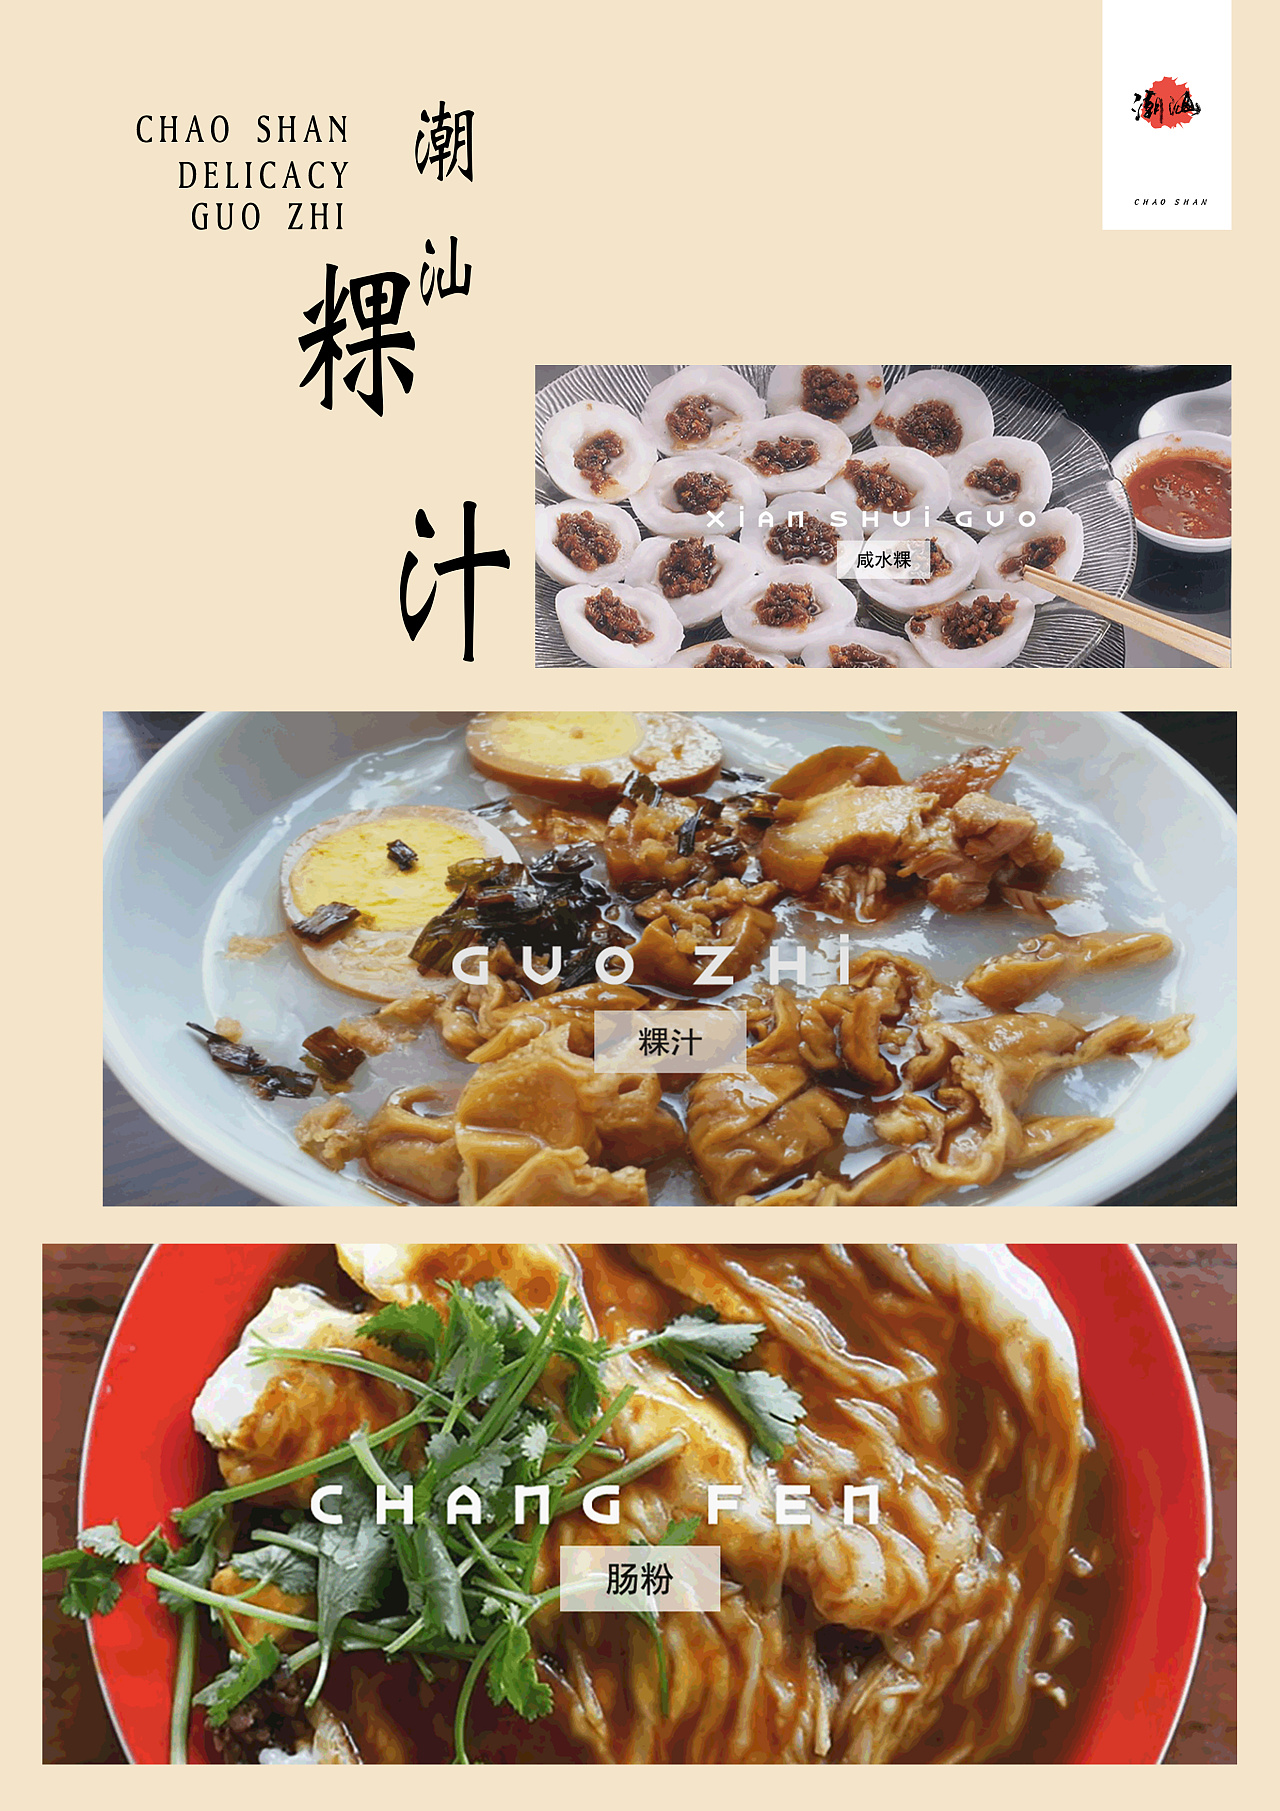 潮汕美食文化宣传图片